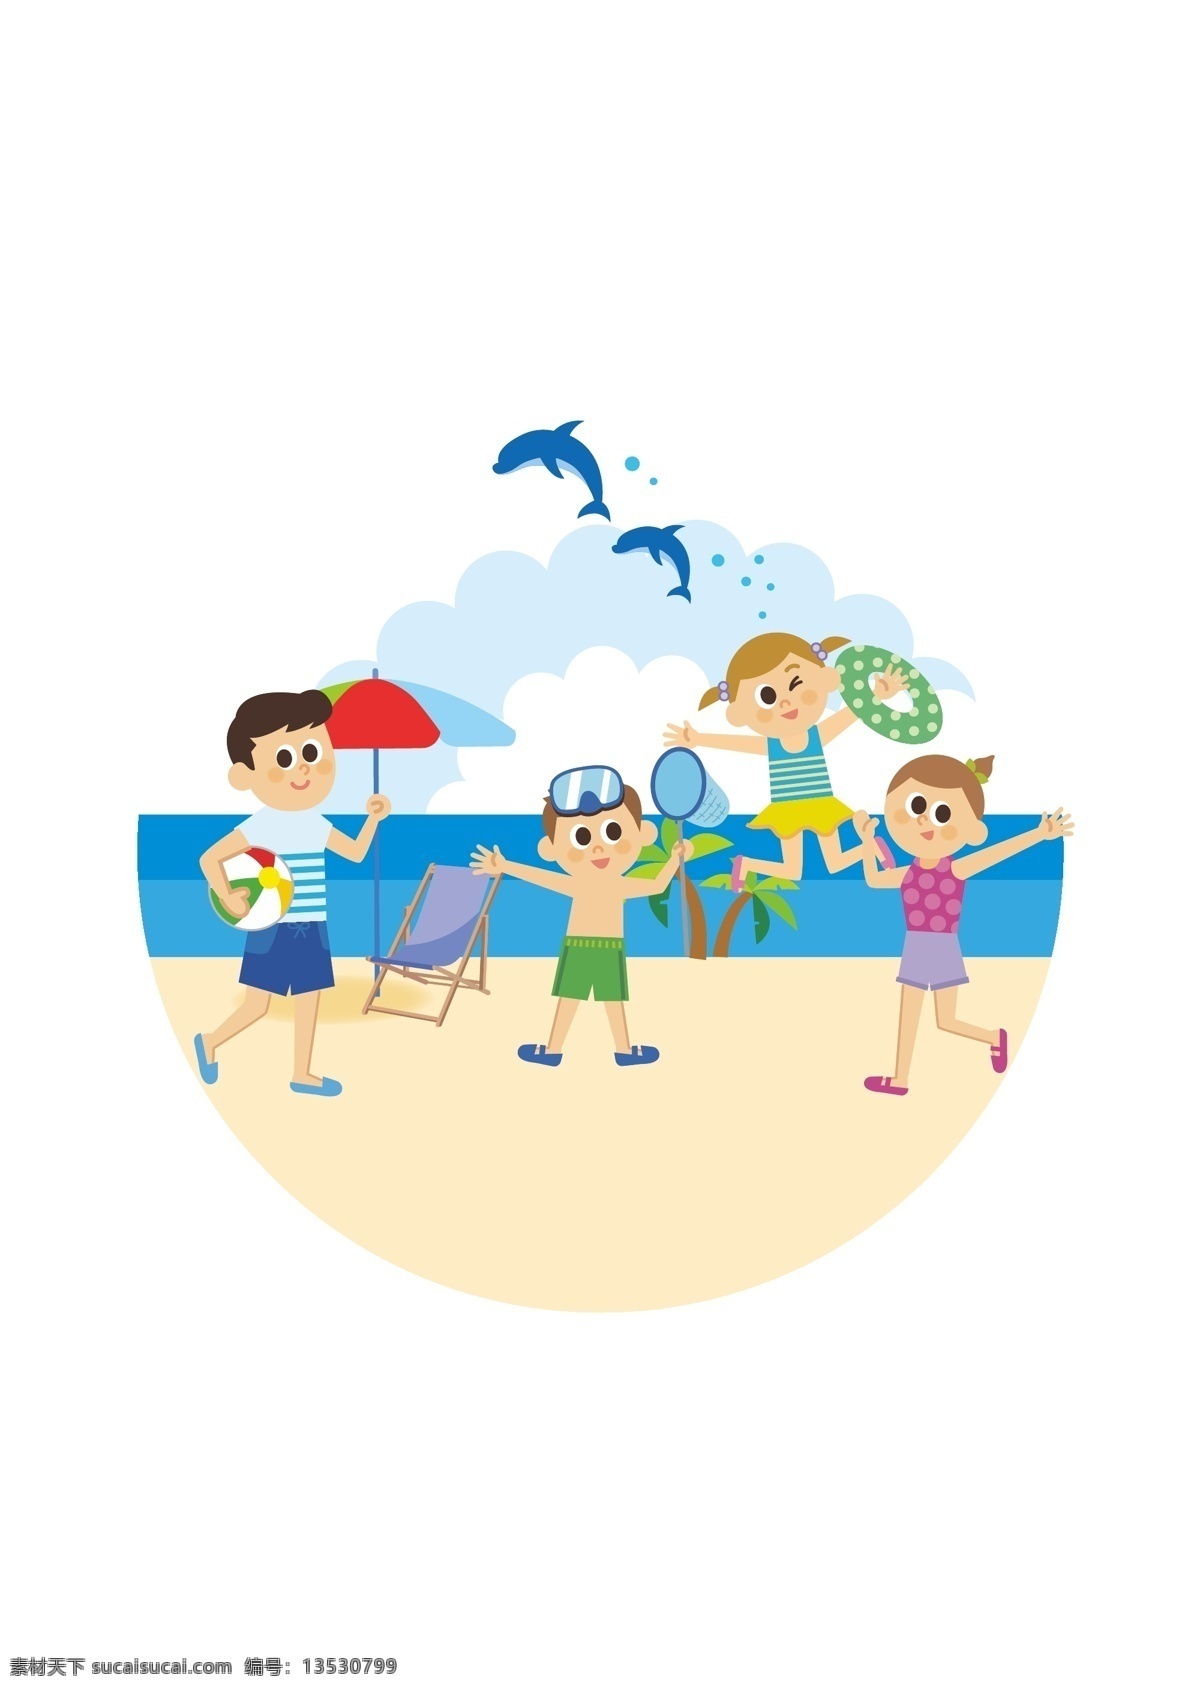 通用 节日 彩色 卡通 手绘 夏季 沙滩 初夏 蓝天白云 海豚 遮阳扇 椰子树 游泳圈 沙滩排球 游泳 欢乐 一家人 玩耍 其乐融融